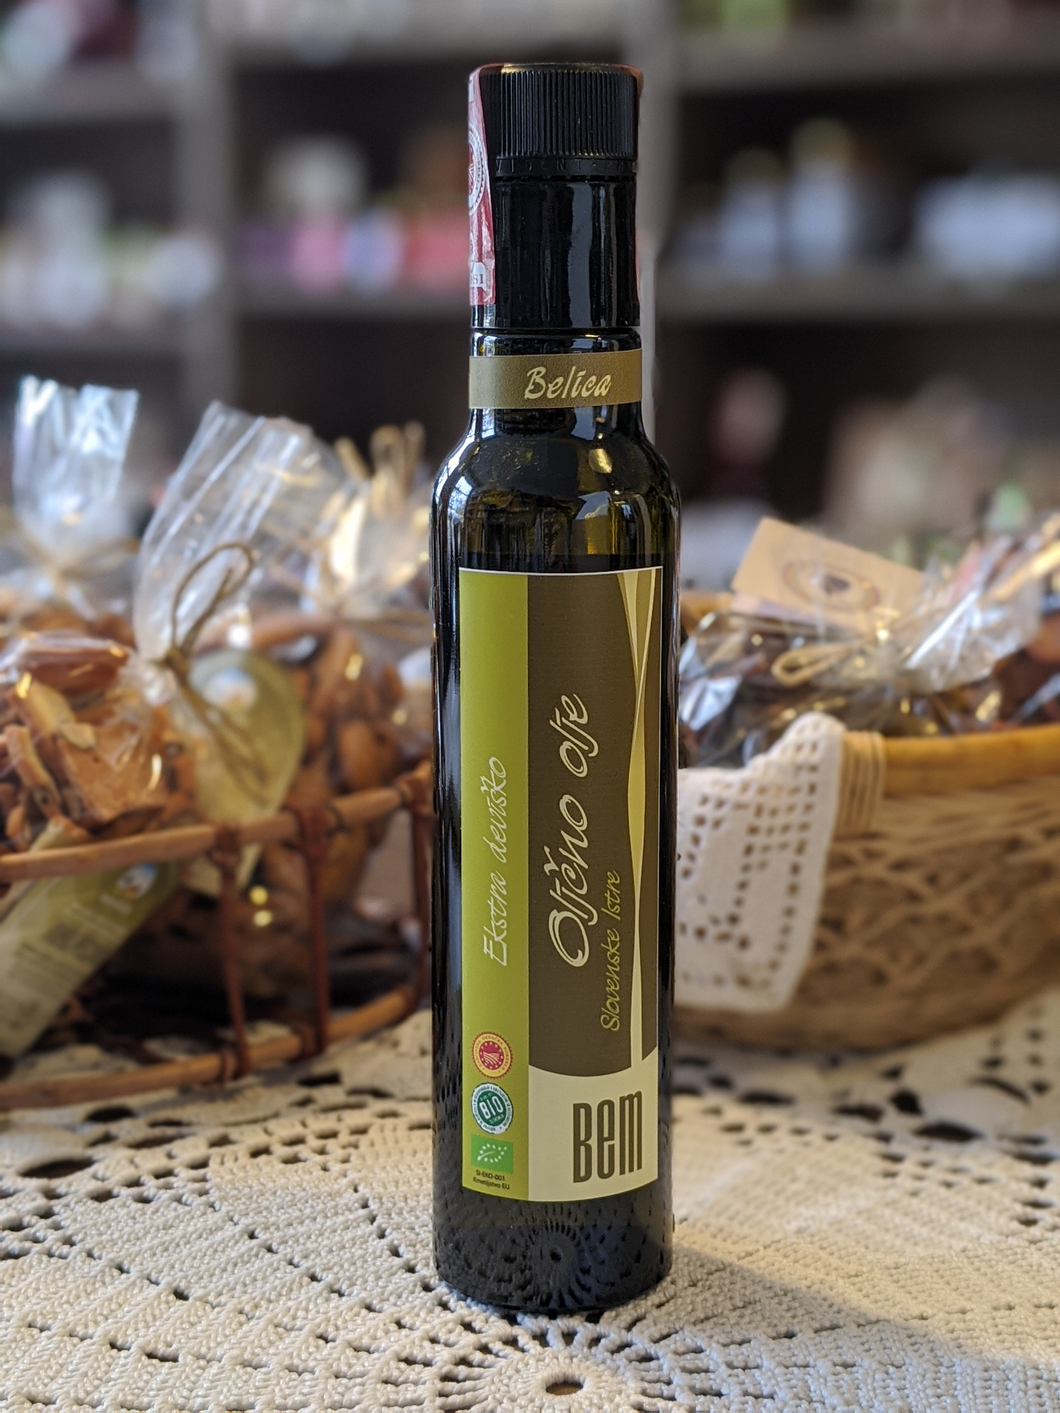 Ekstra deviško oljčno olje Slovenske Istre, istrska belica 250ml, 500ml -zaščitena označba porekla